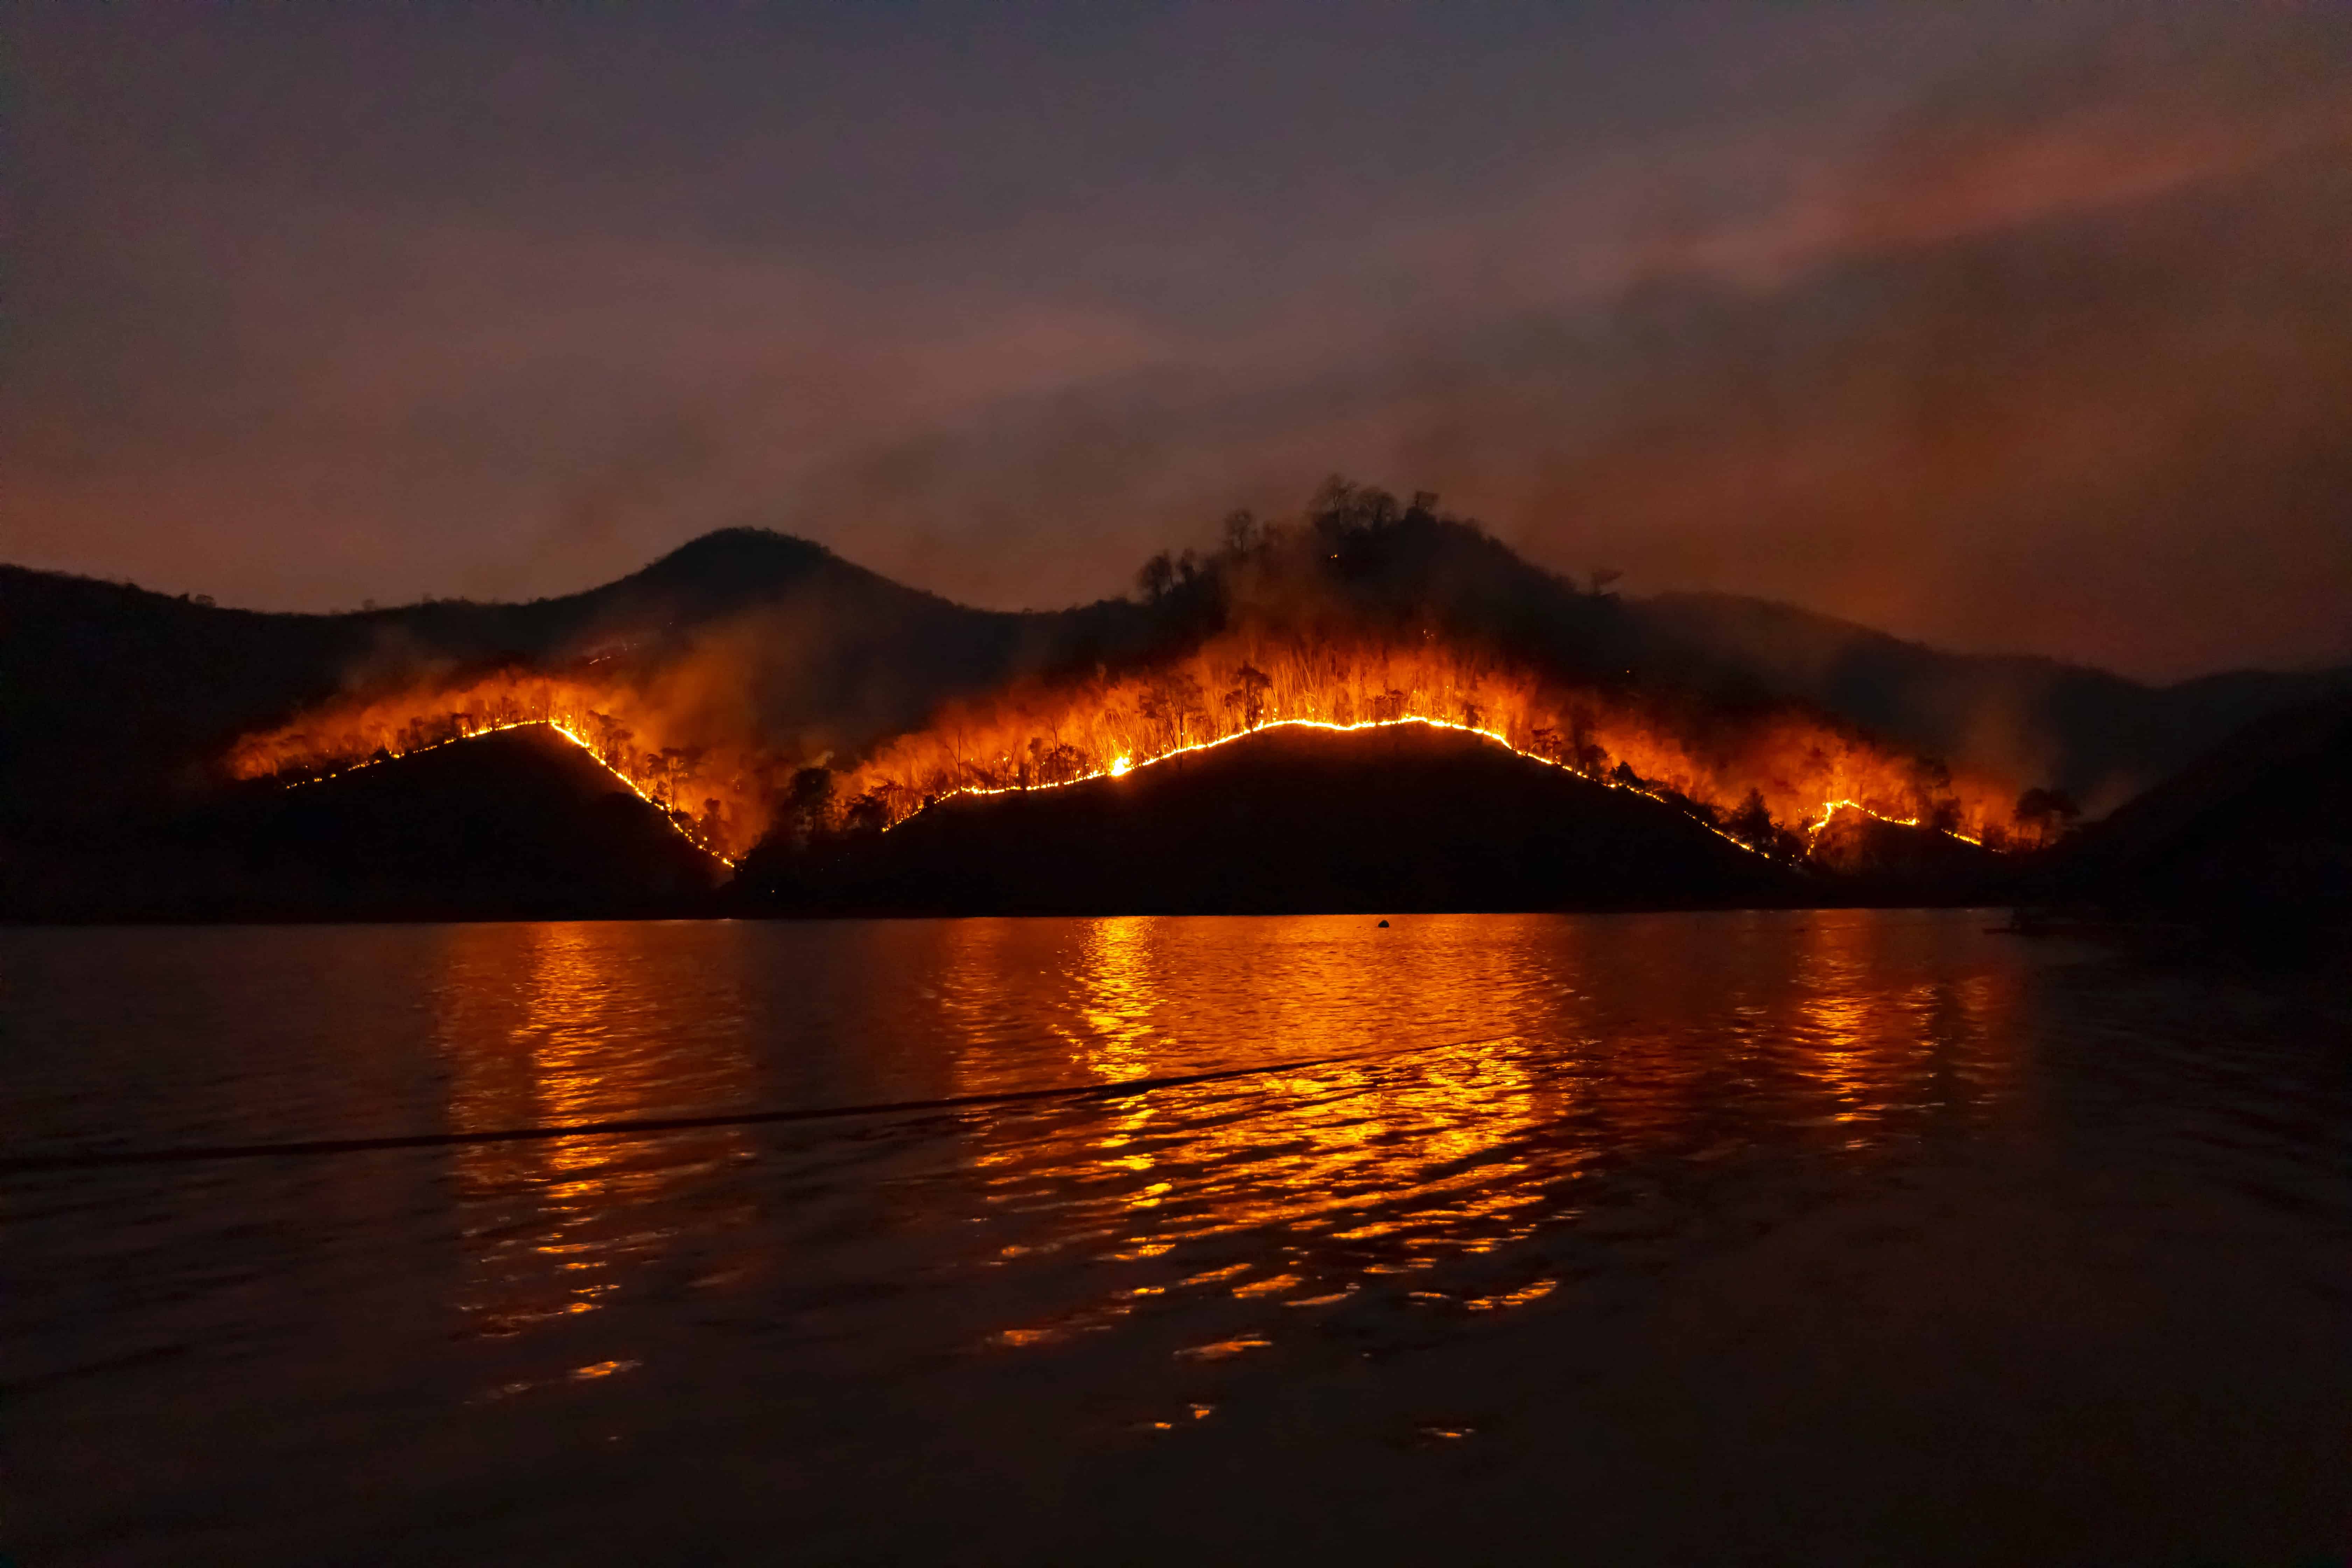 wildfire on mountain orange flames